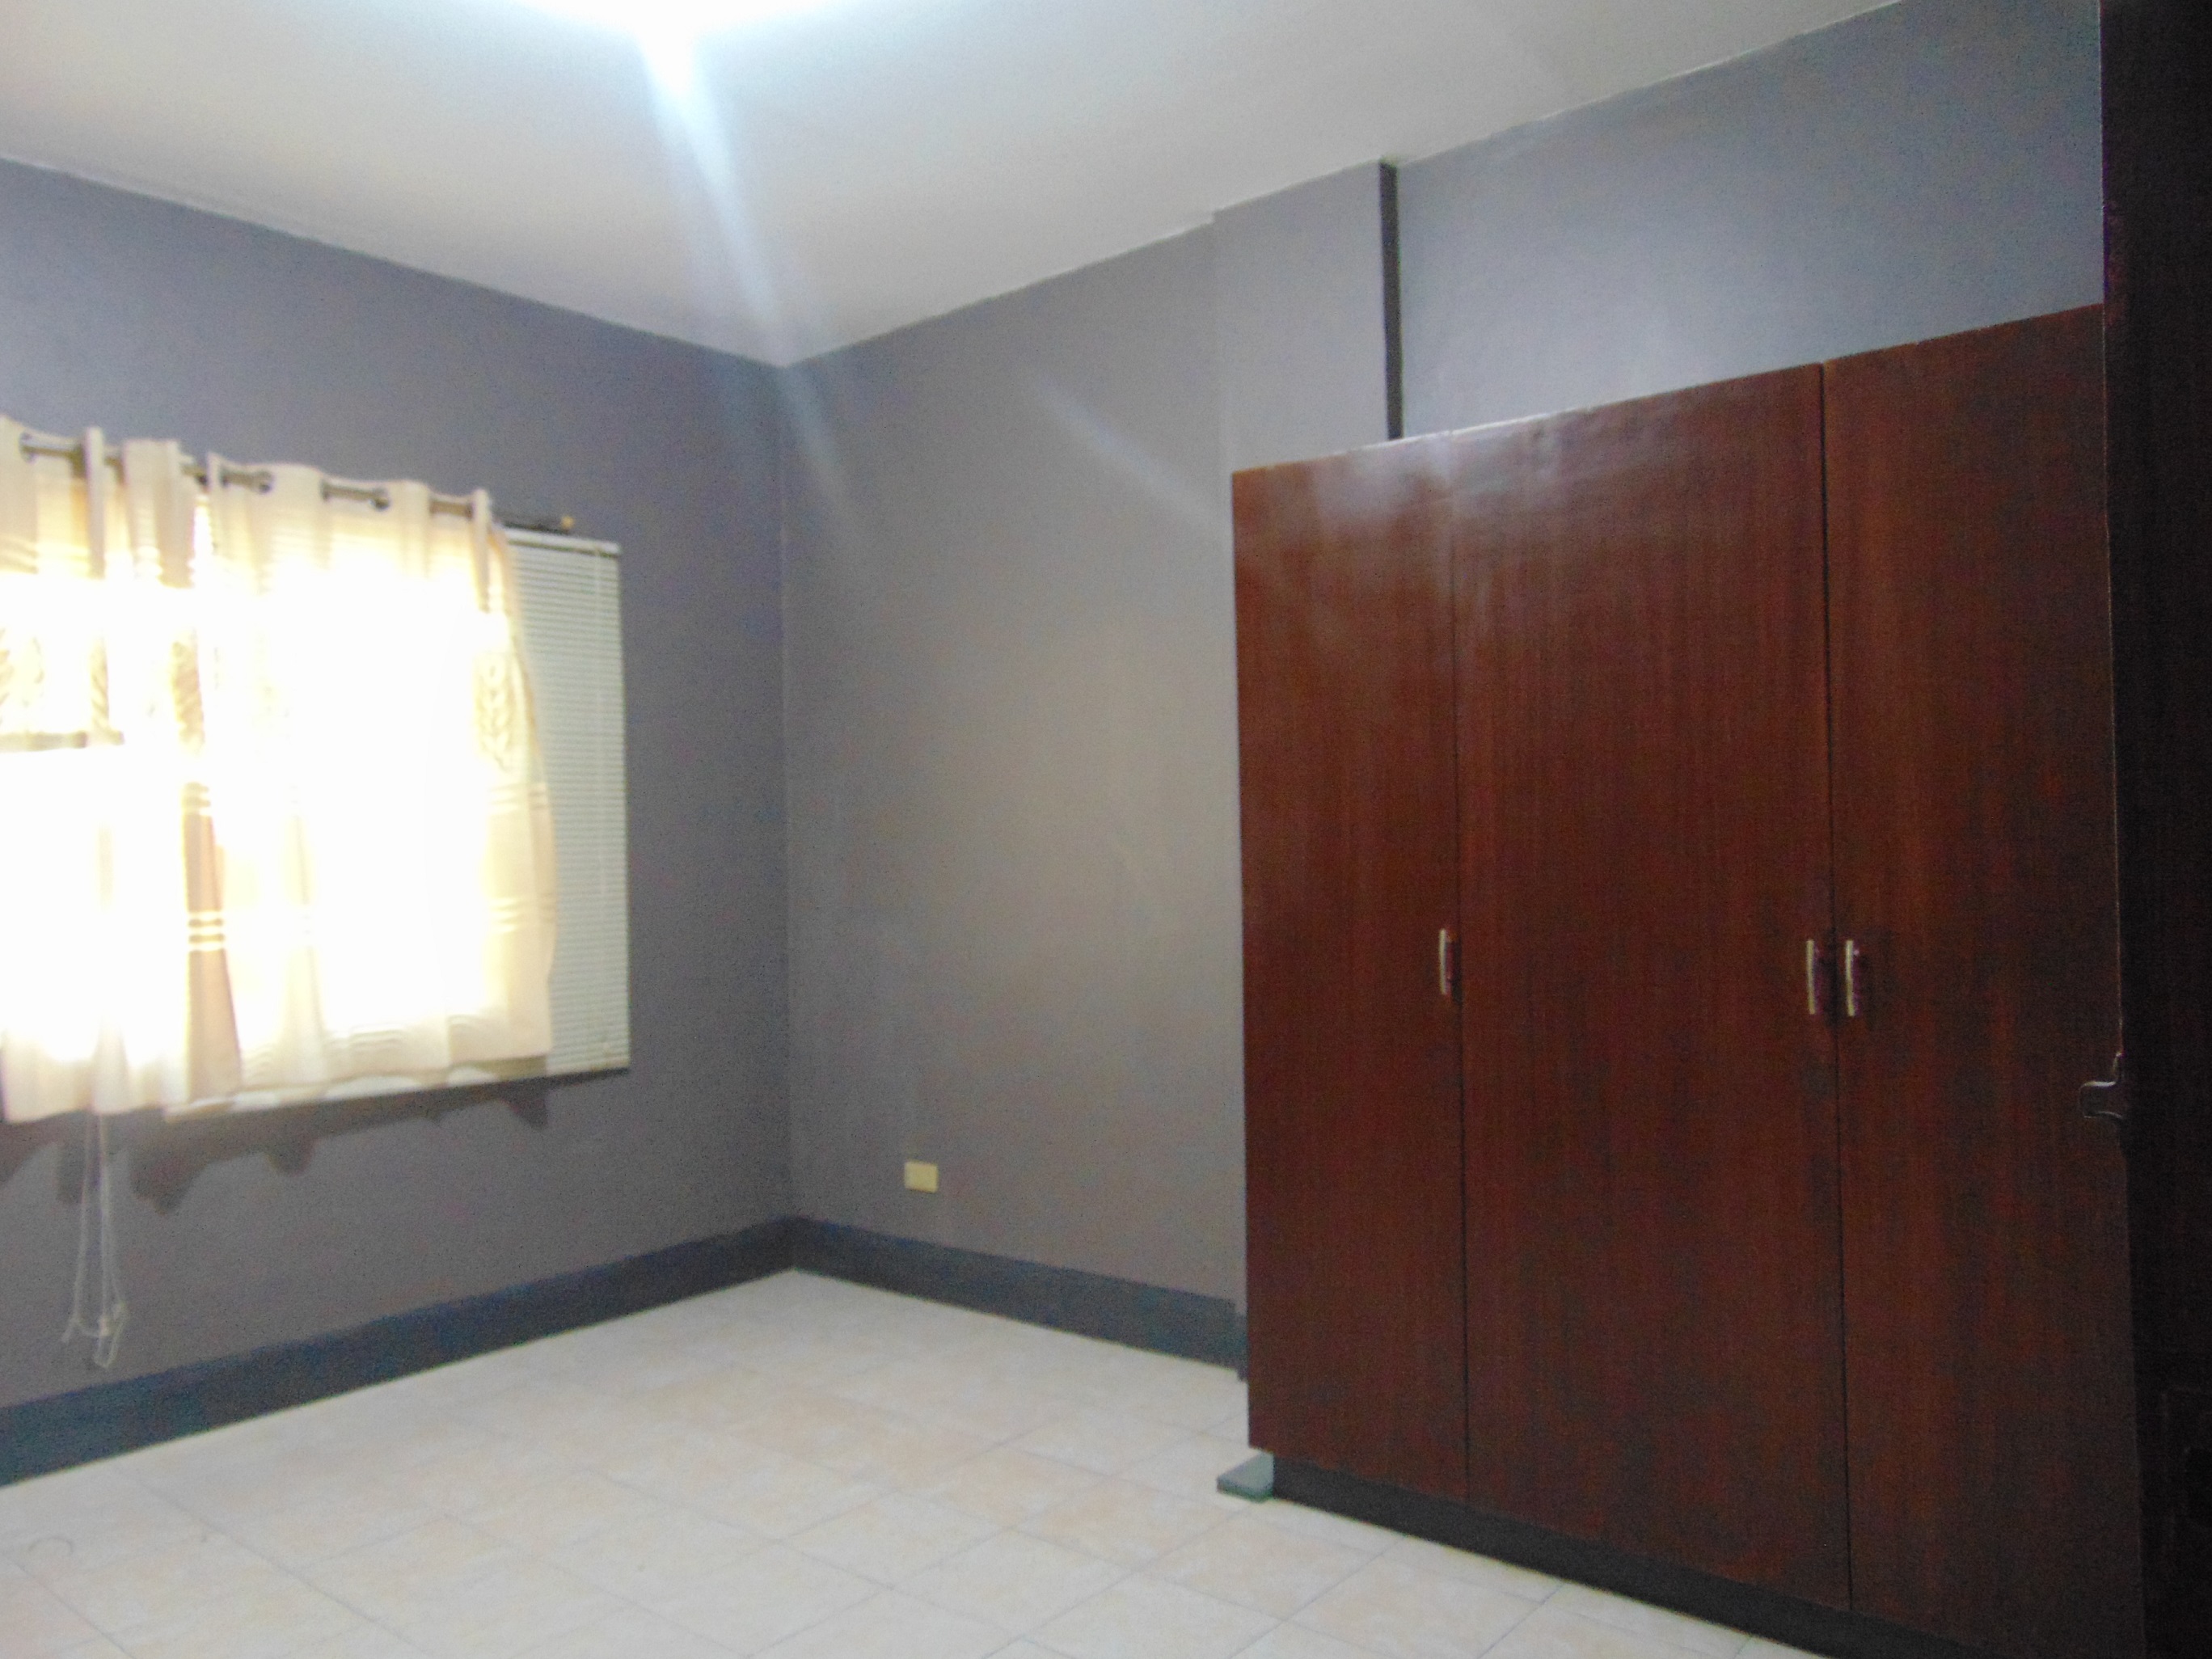 2-bedrooms-apartment-located-near-v-rama-cebu-city